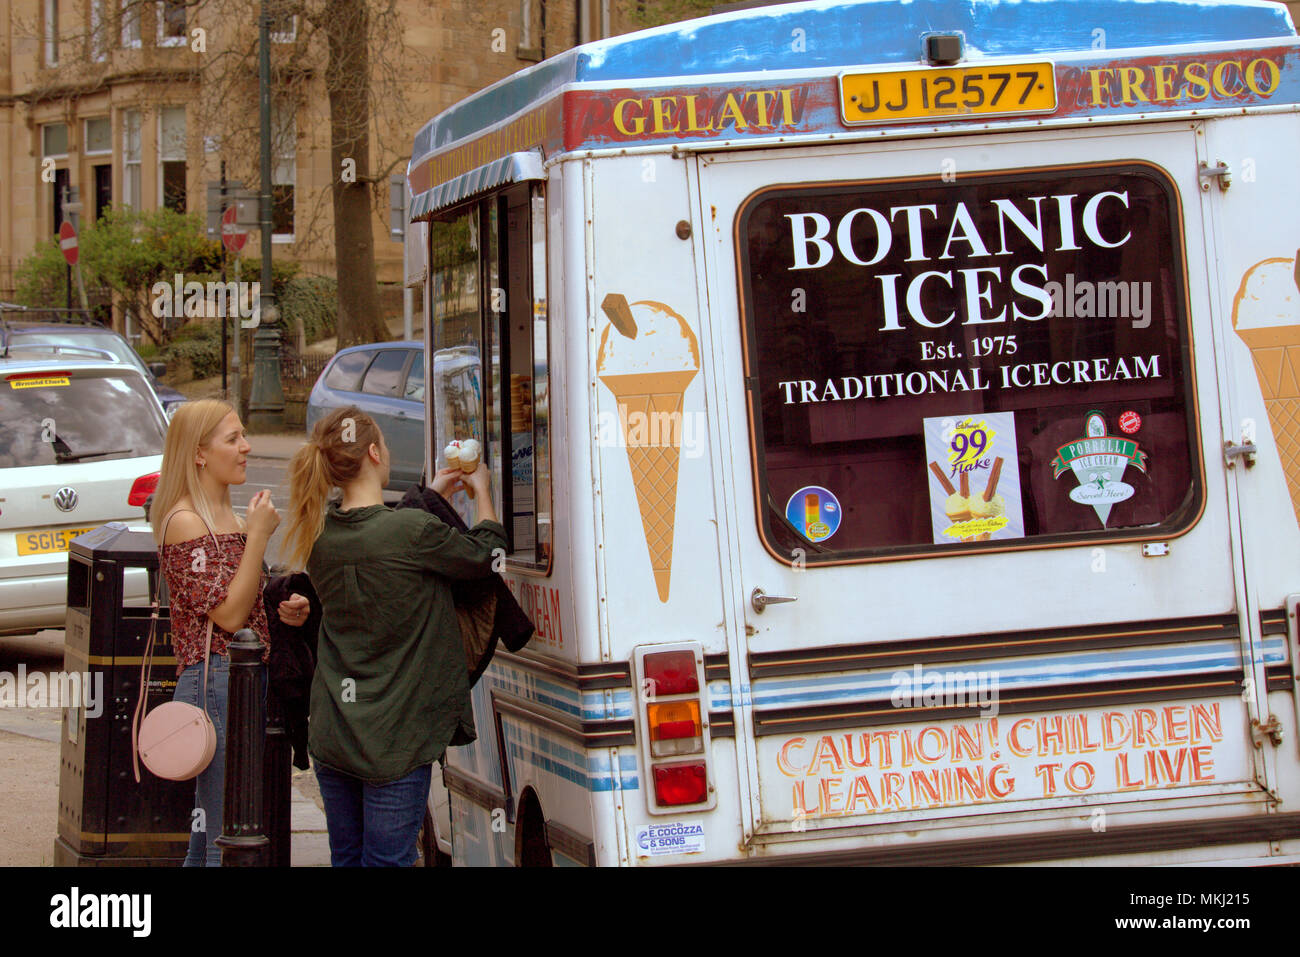 Junge Mädchen genießen Eistüten aus der Van in der Botanik während der heißen Bank Holiday Wochenende Wetter Stockfoto